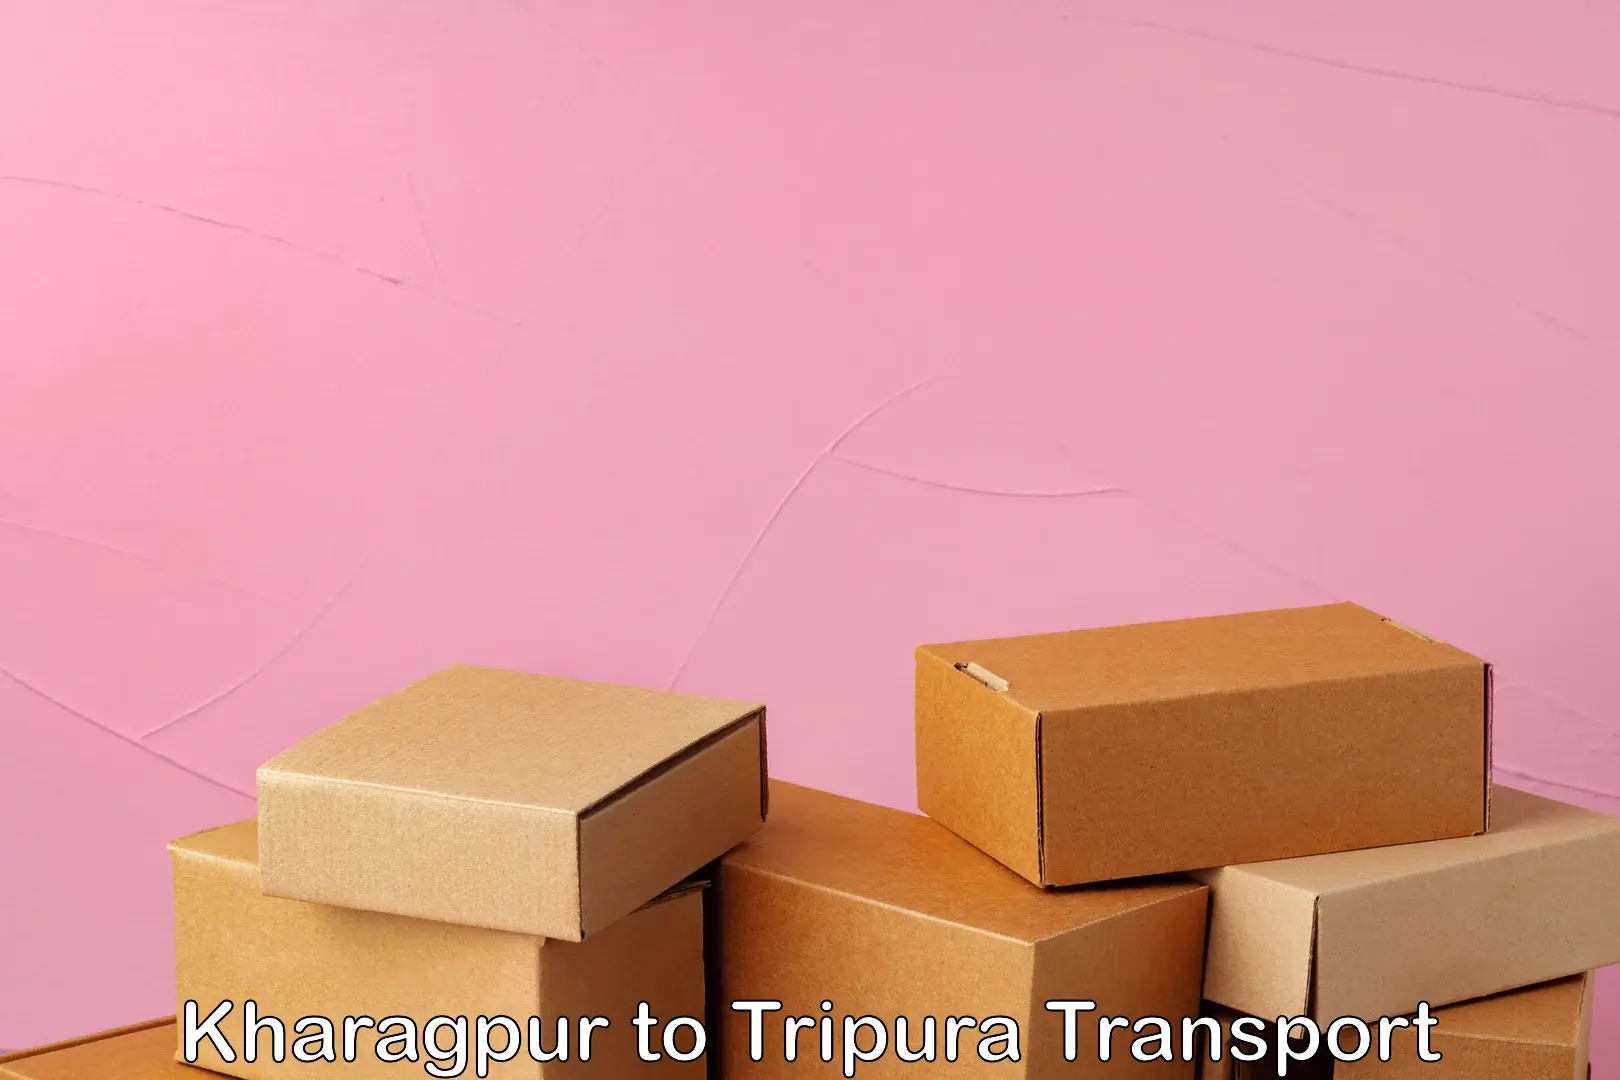 Daily transport service Kharagpur to Kamalpur